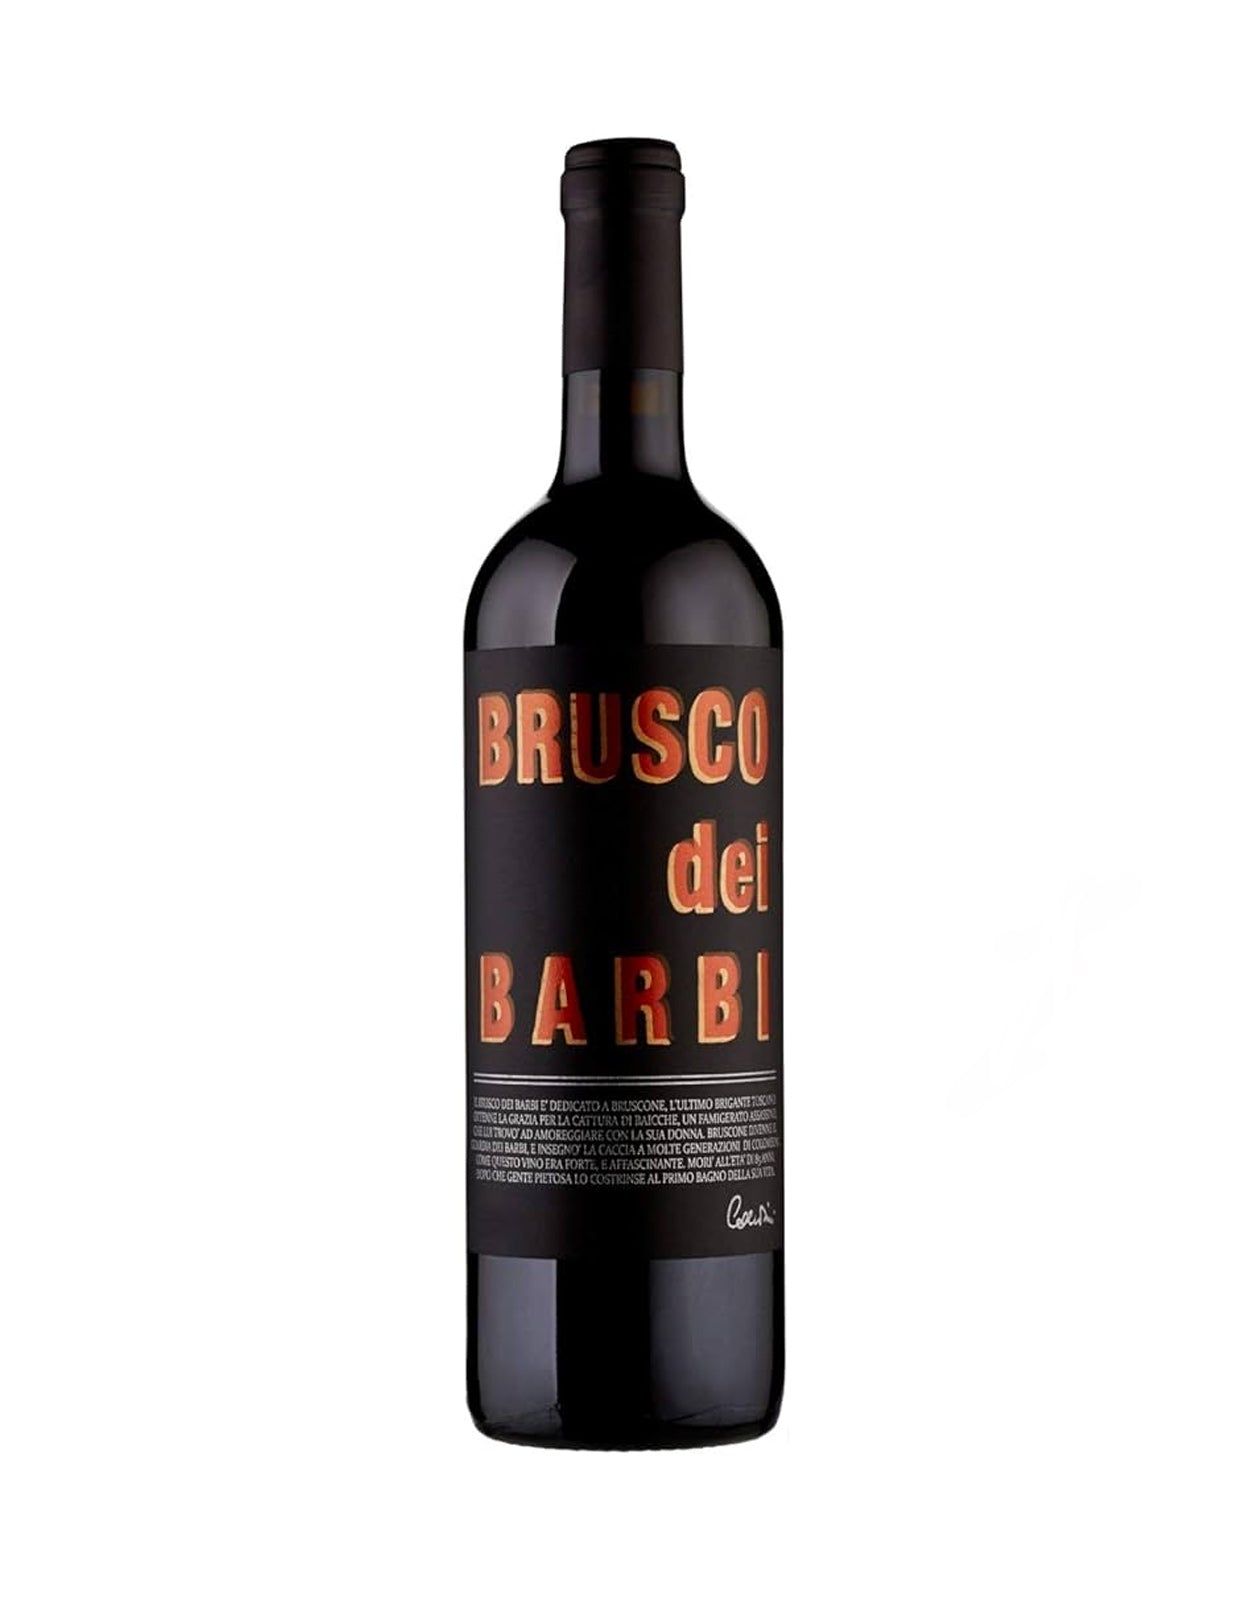 Barbi Brusco Dei Barbi 2017 750ml | Whisky Liquor Store